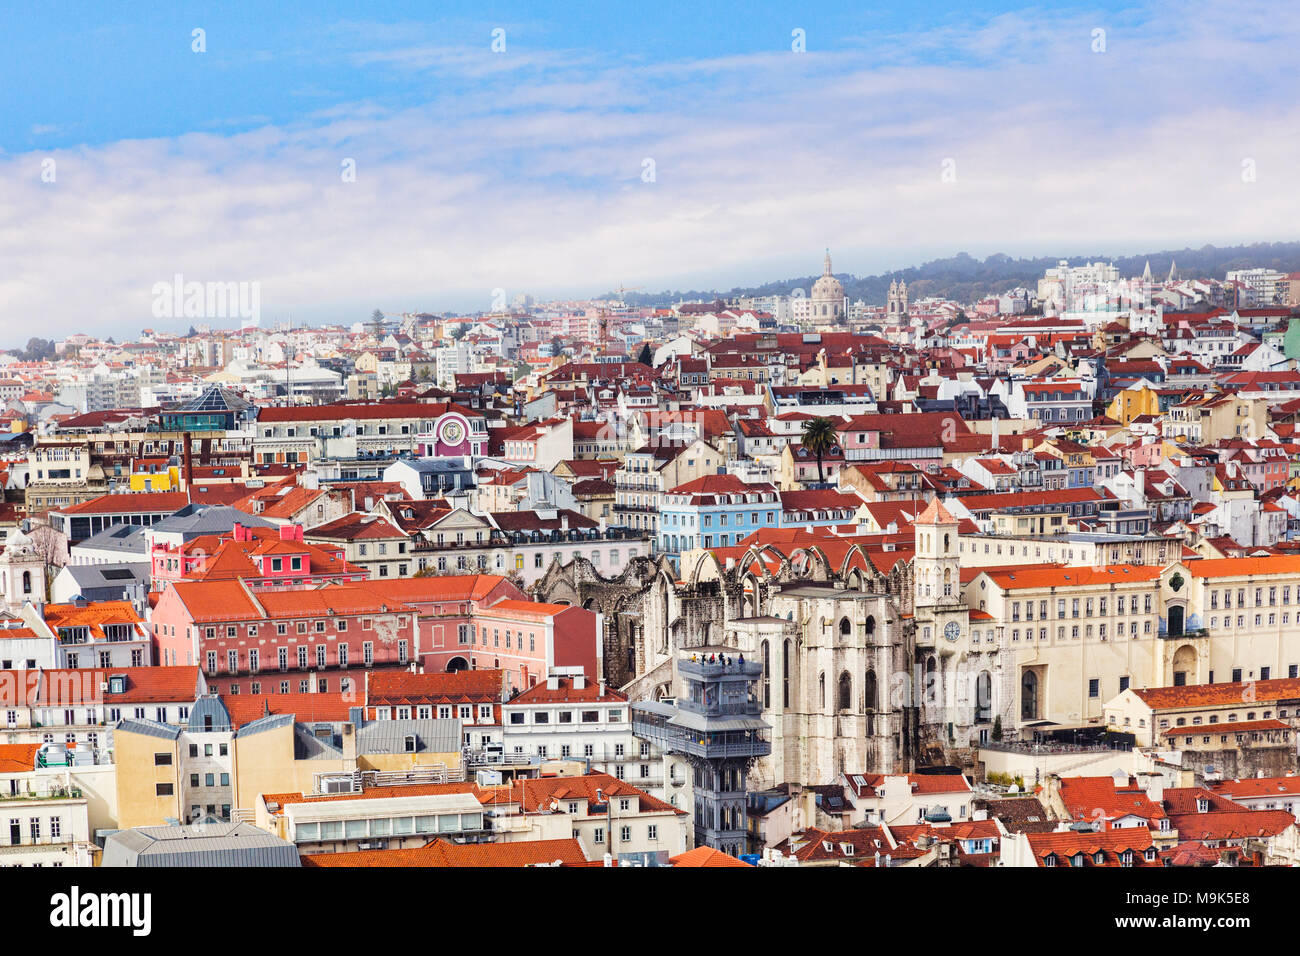 El 1 de marzo de 2013: Lisboa, Portugal - una vista de la ciudad desde el castillo morisco, con el Elevador de Santa Justa en el oriente. Foto de stock